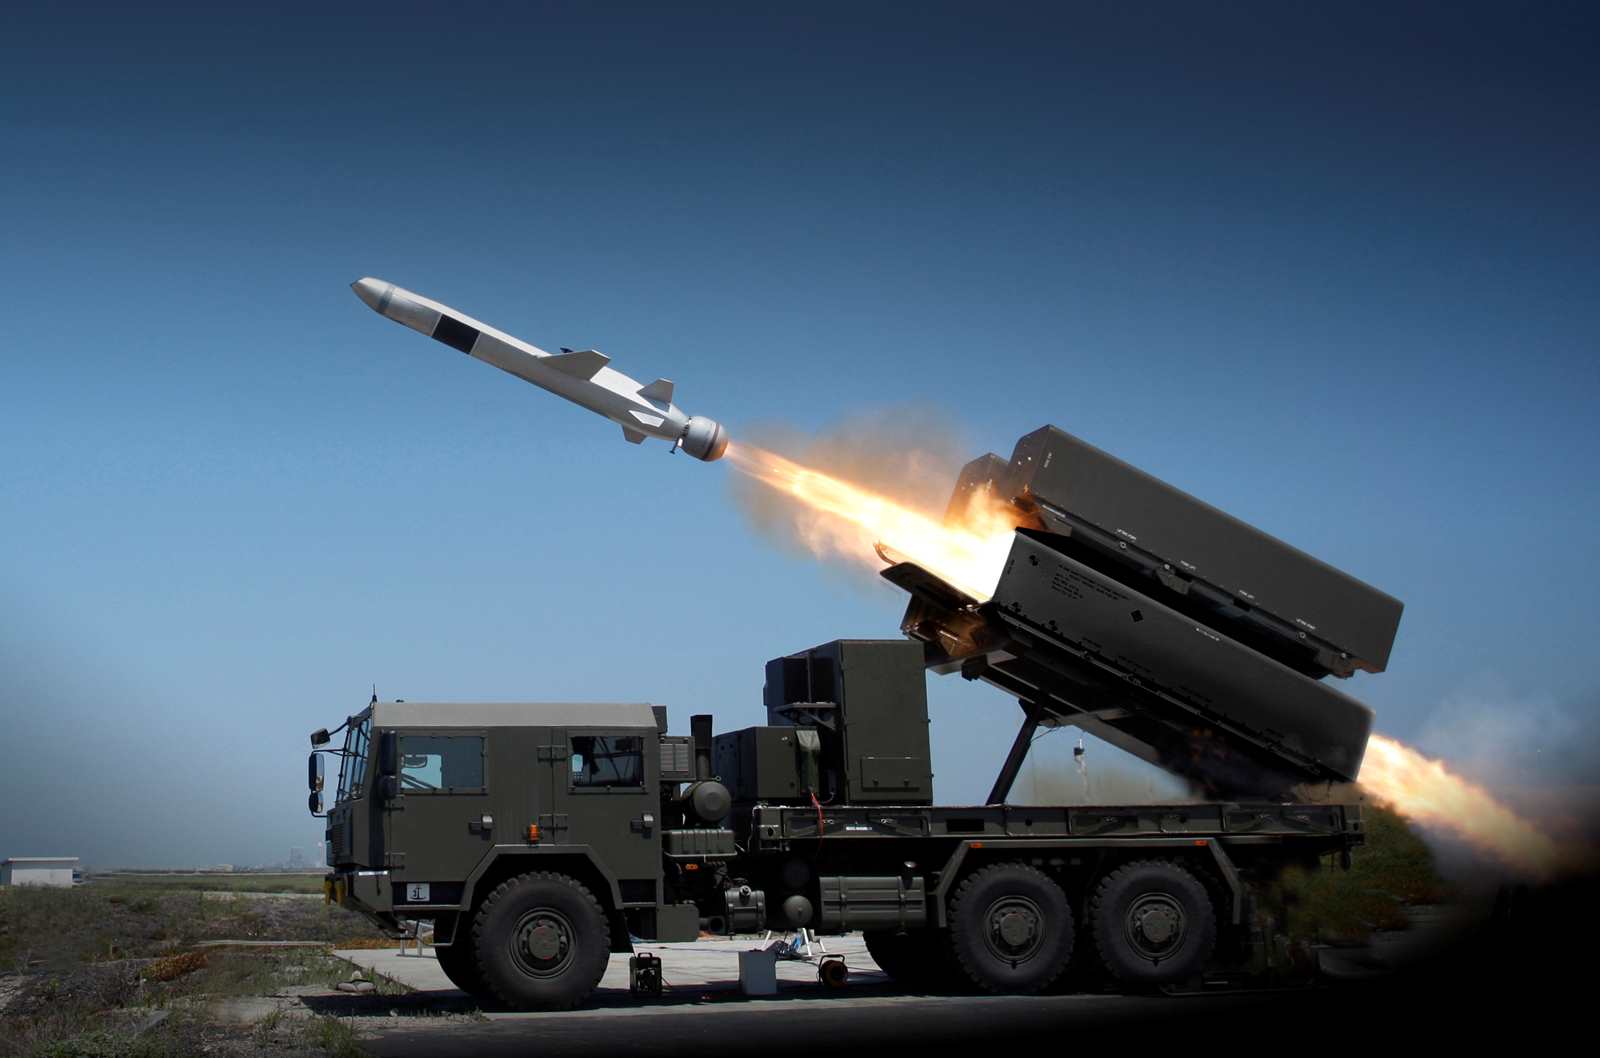 Η Ρουμανία έκλεισε την προμήθεια για το σύστημα επάκτιας άμυνας βασισμένο στους πυραύλους NSM (βίντεο)